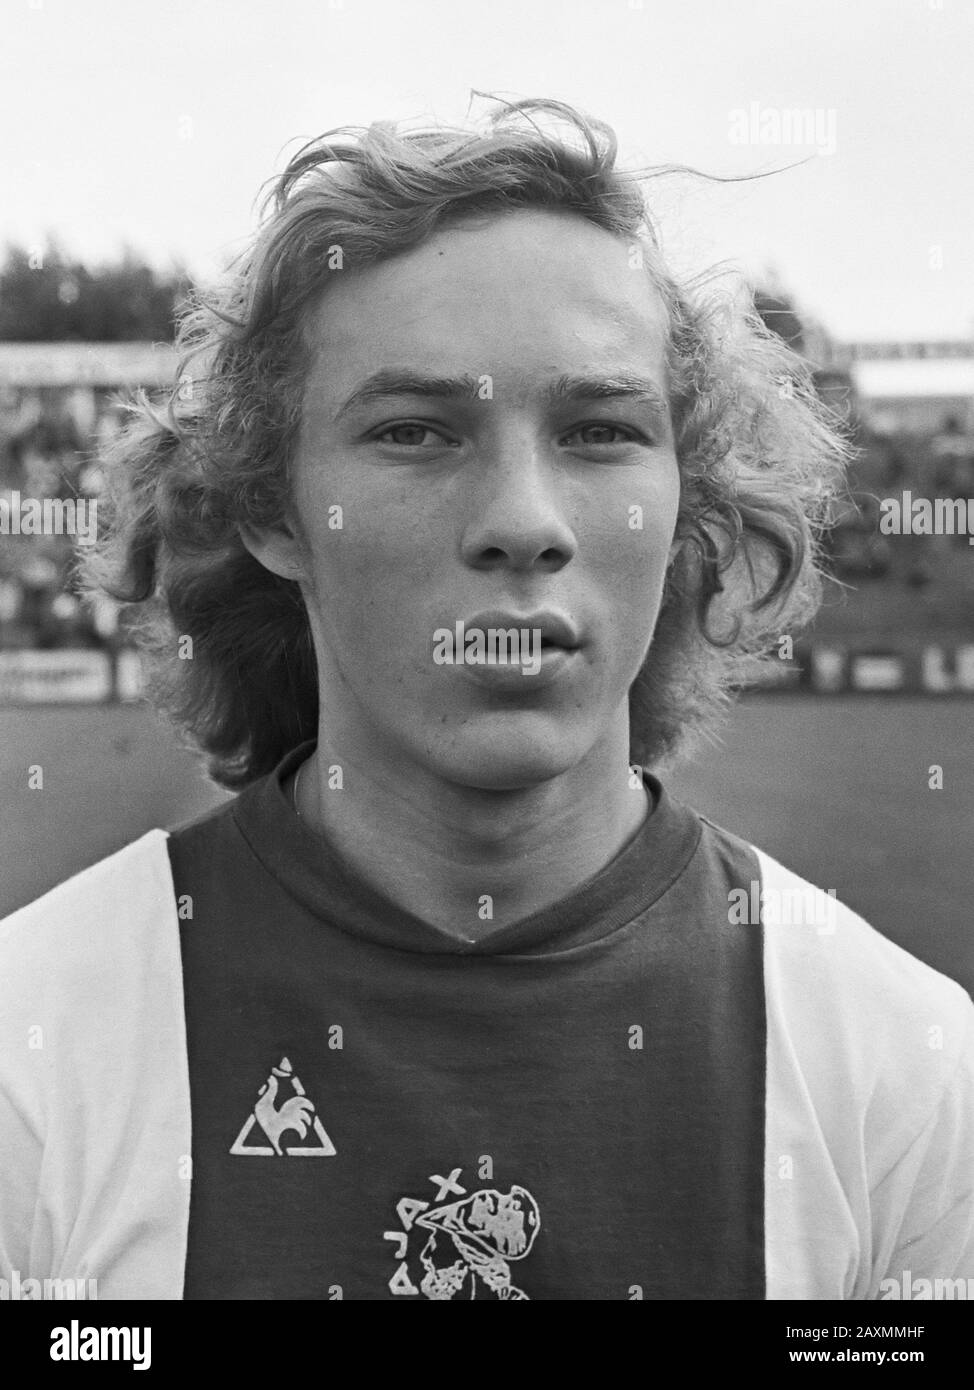 Ajax against Hertha BSC 3-1 exhibition game; Henk van Santen August 25, 1974 Stock Photo